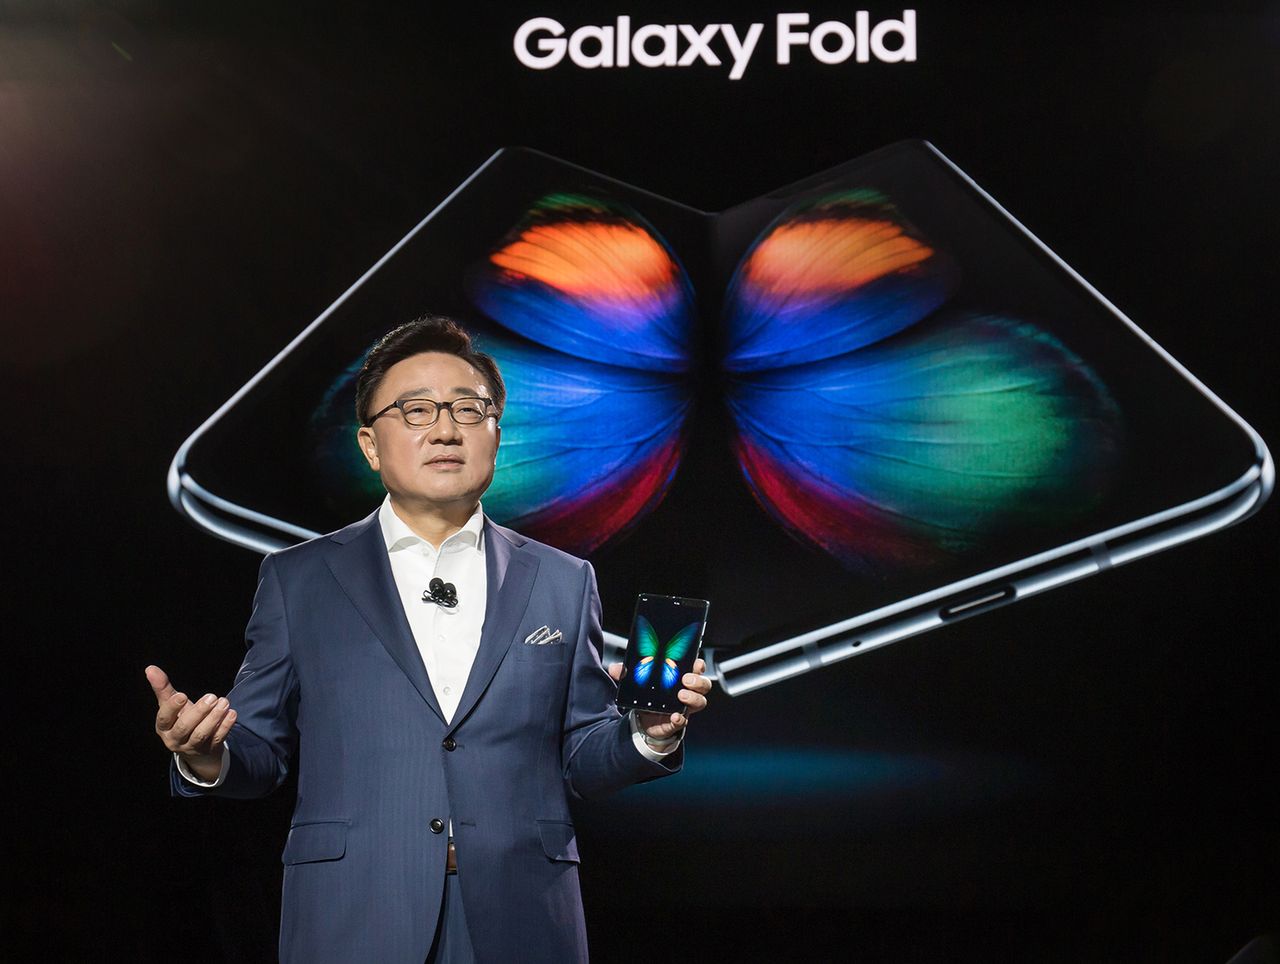 Samsung Galaxy Fold ma być dopiero początkiem, źródło: materiały prasowe